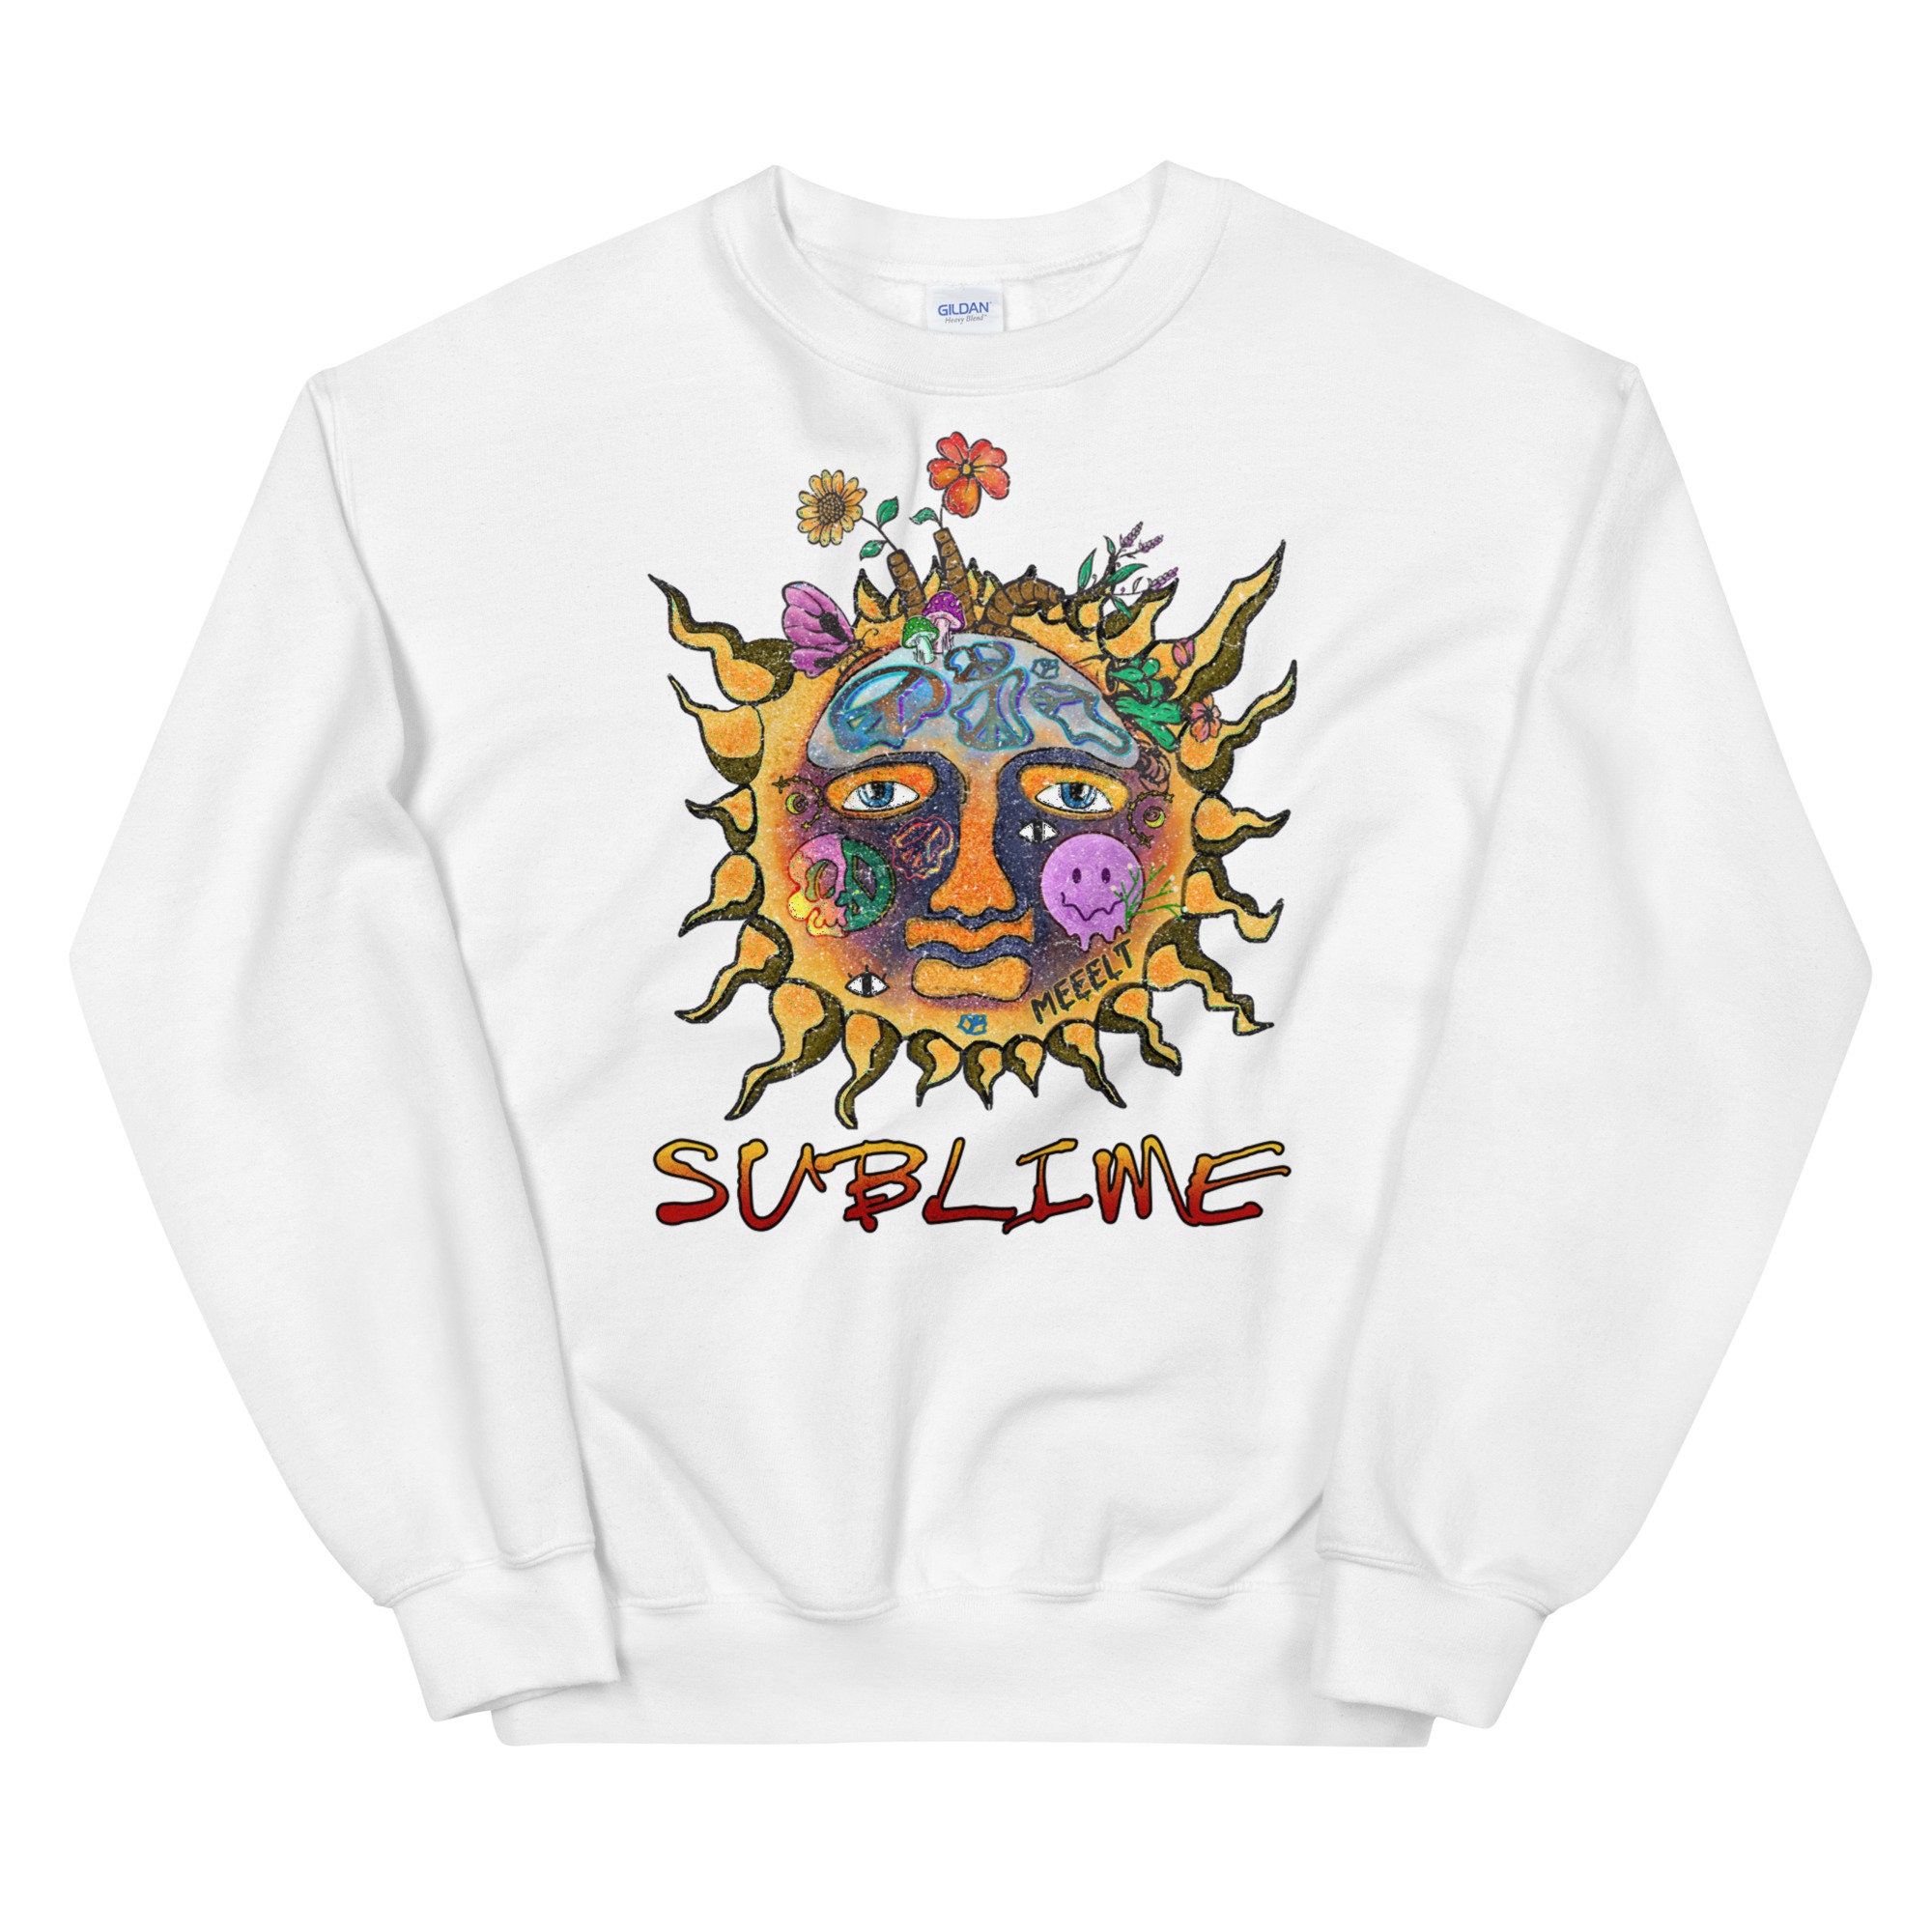 sublime tour crewneck sweatshirt